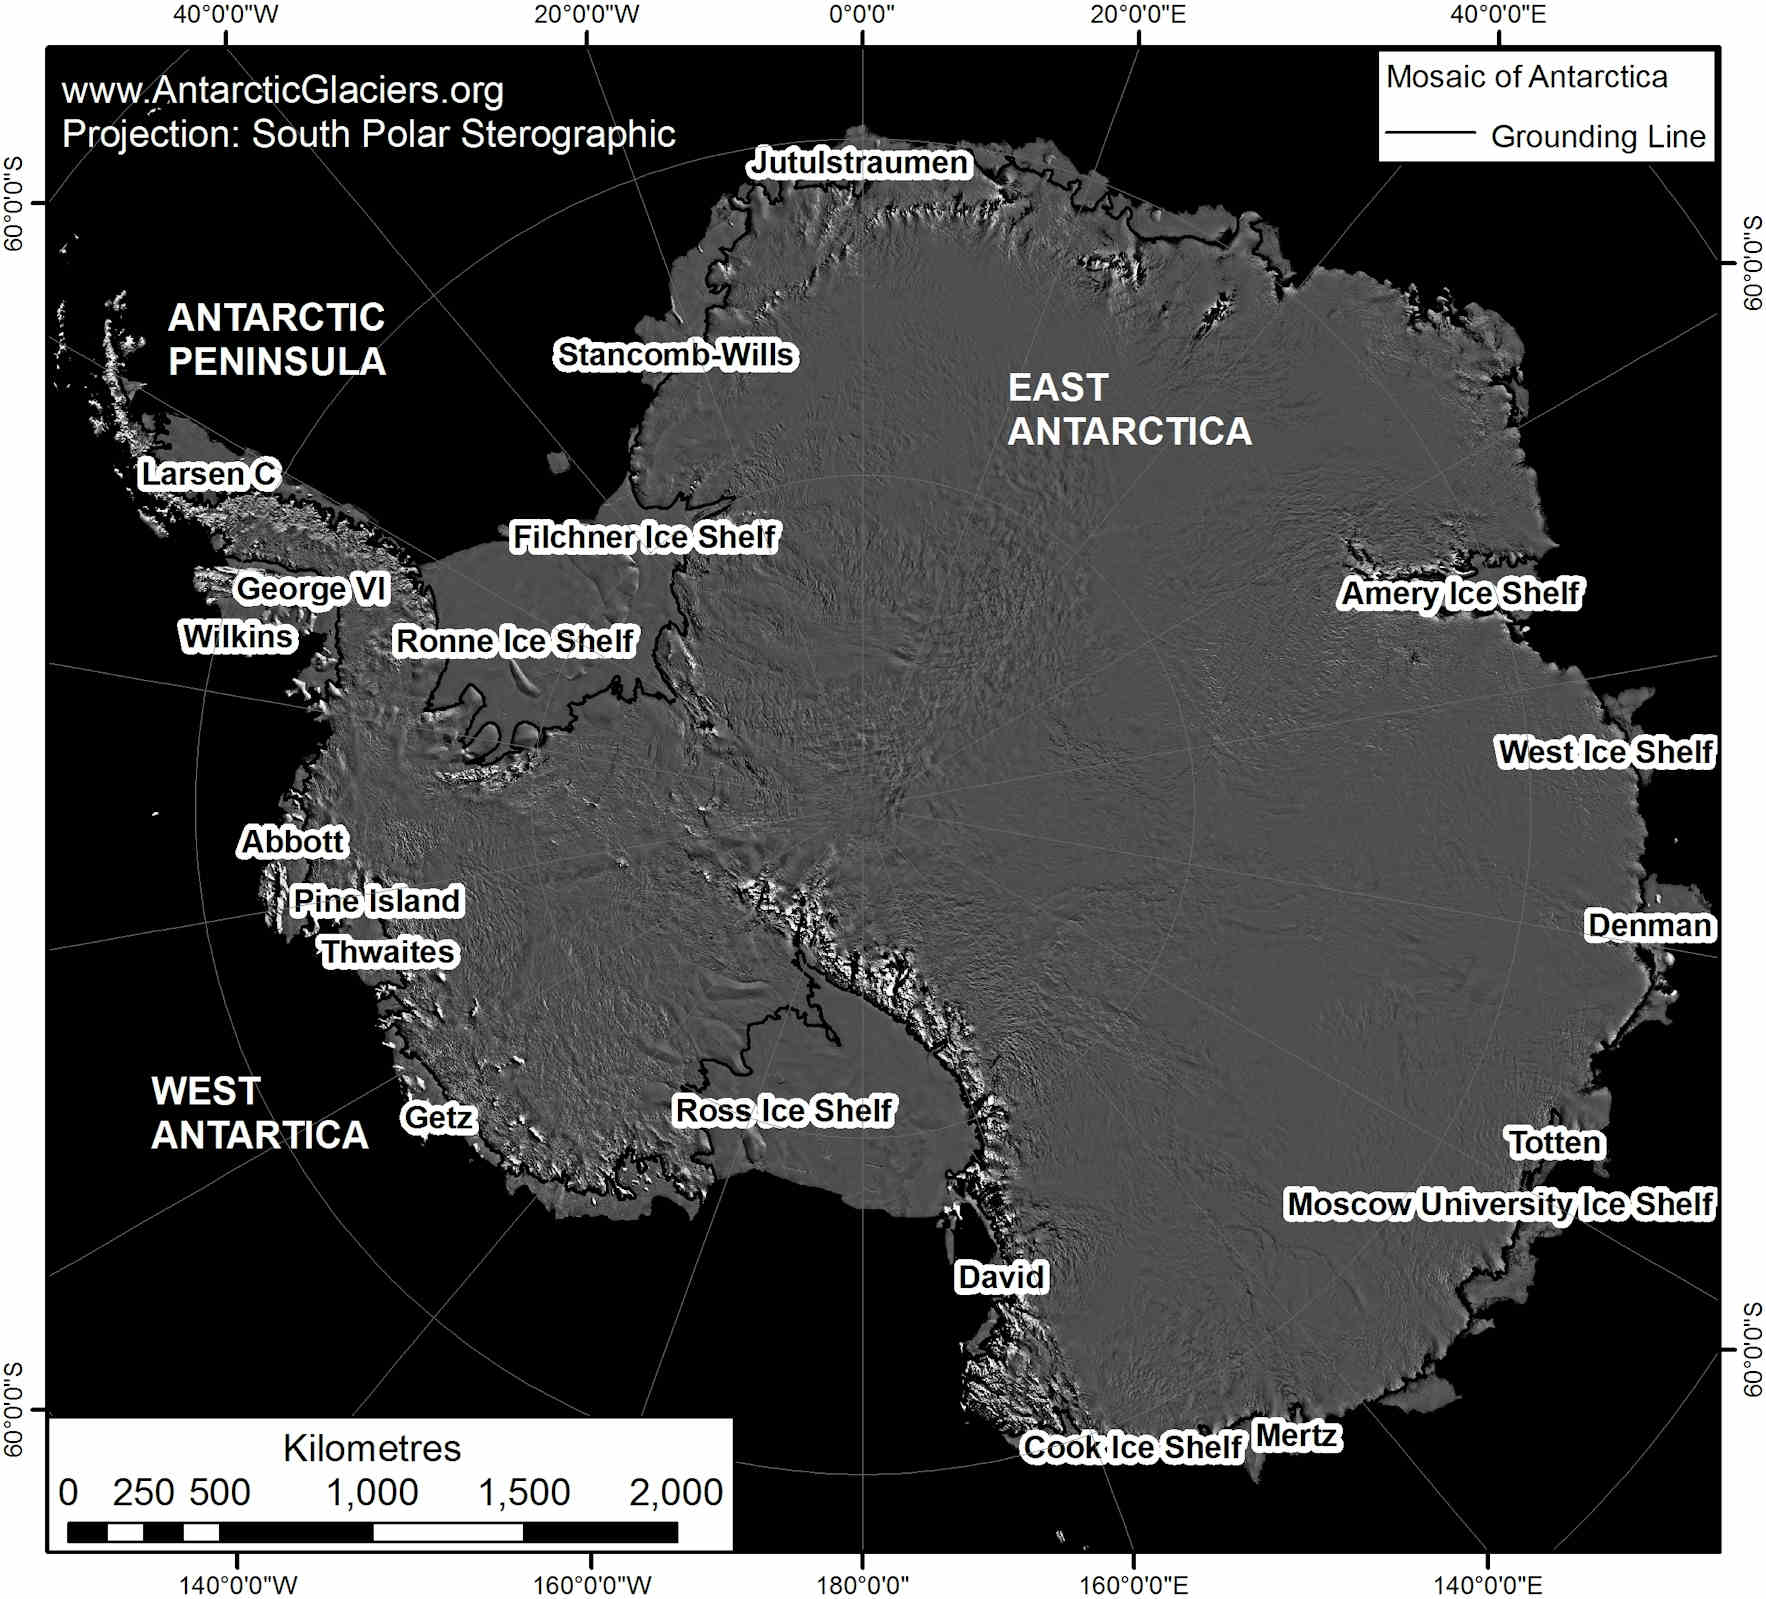 Kép: A legfontosabb shelfek az Antarktisz körül.